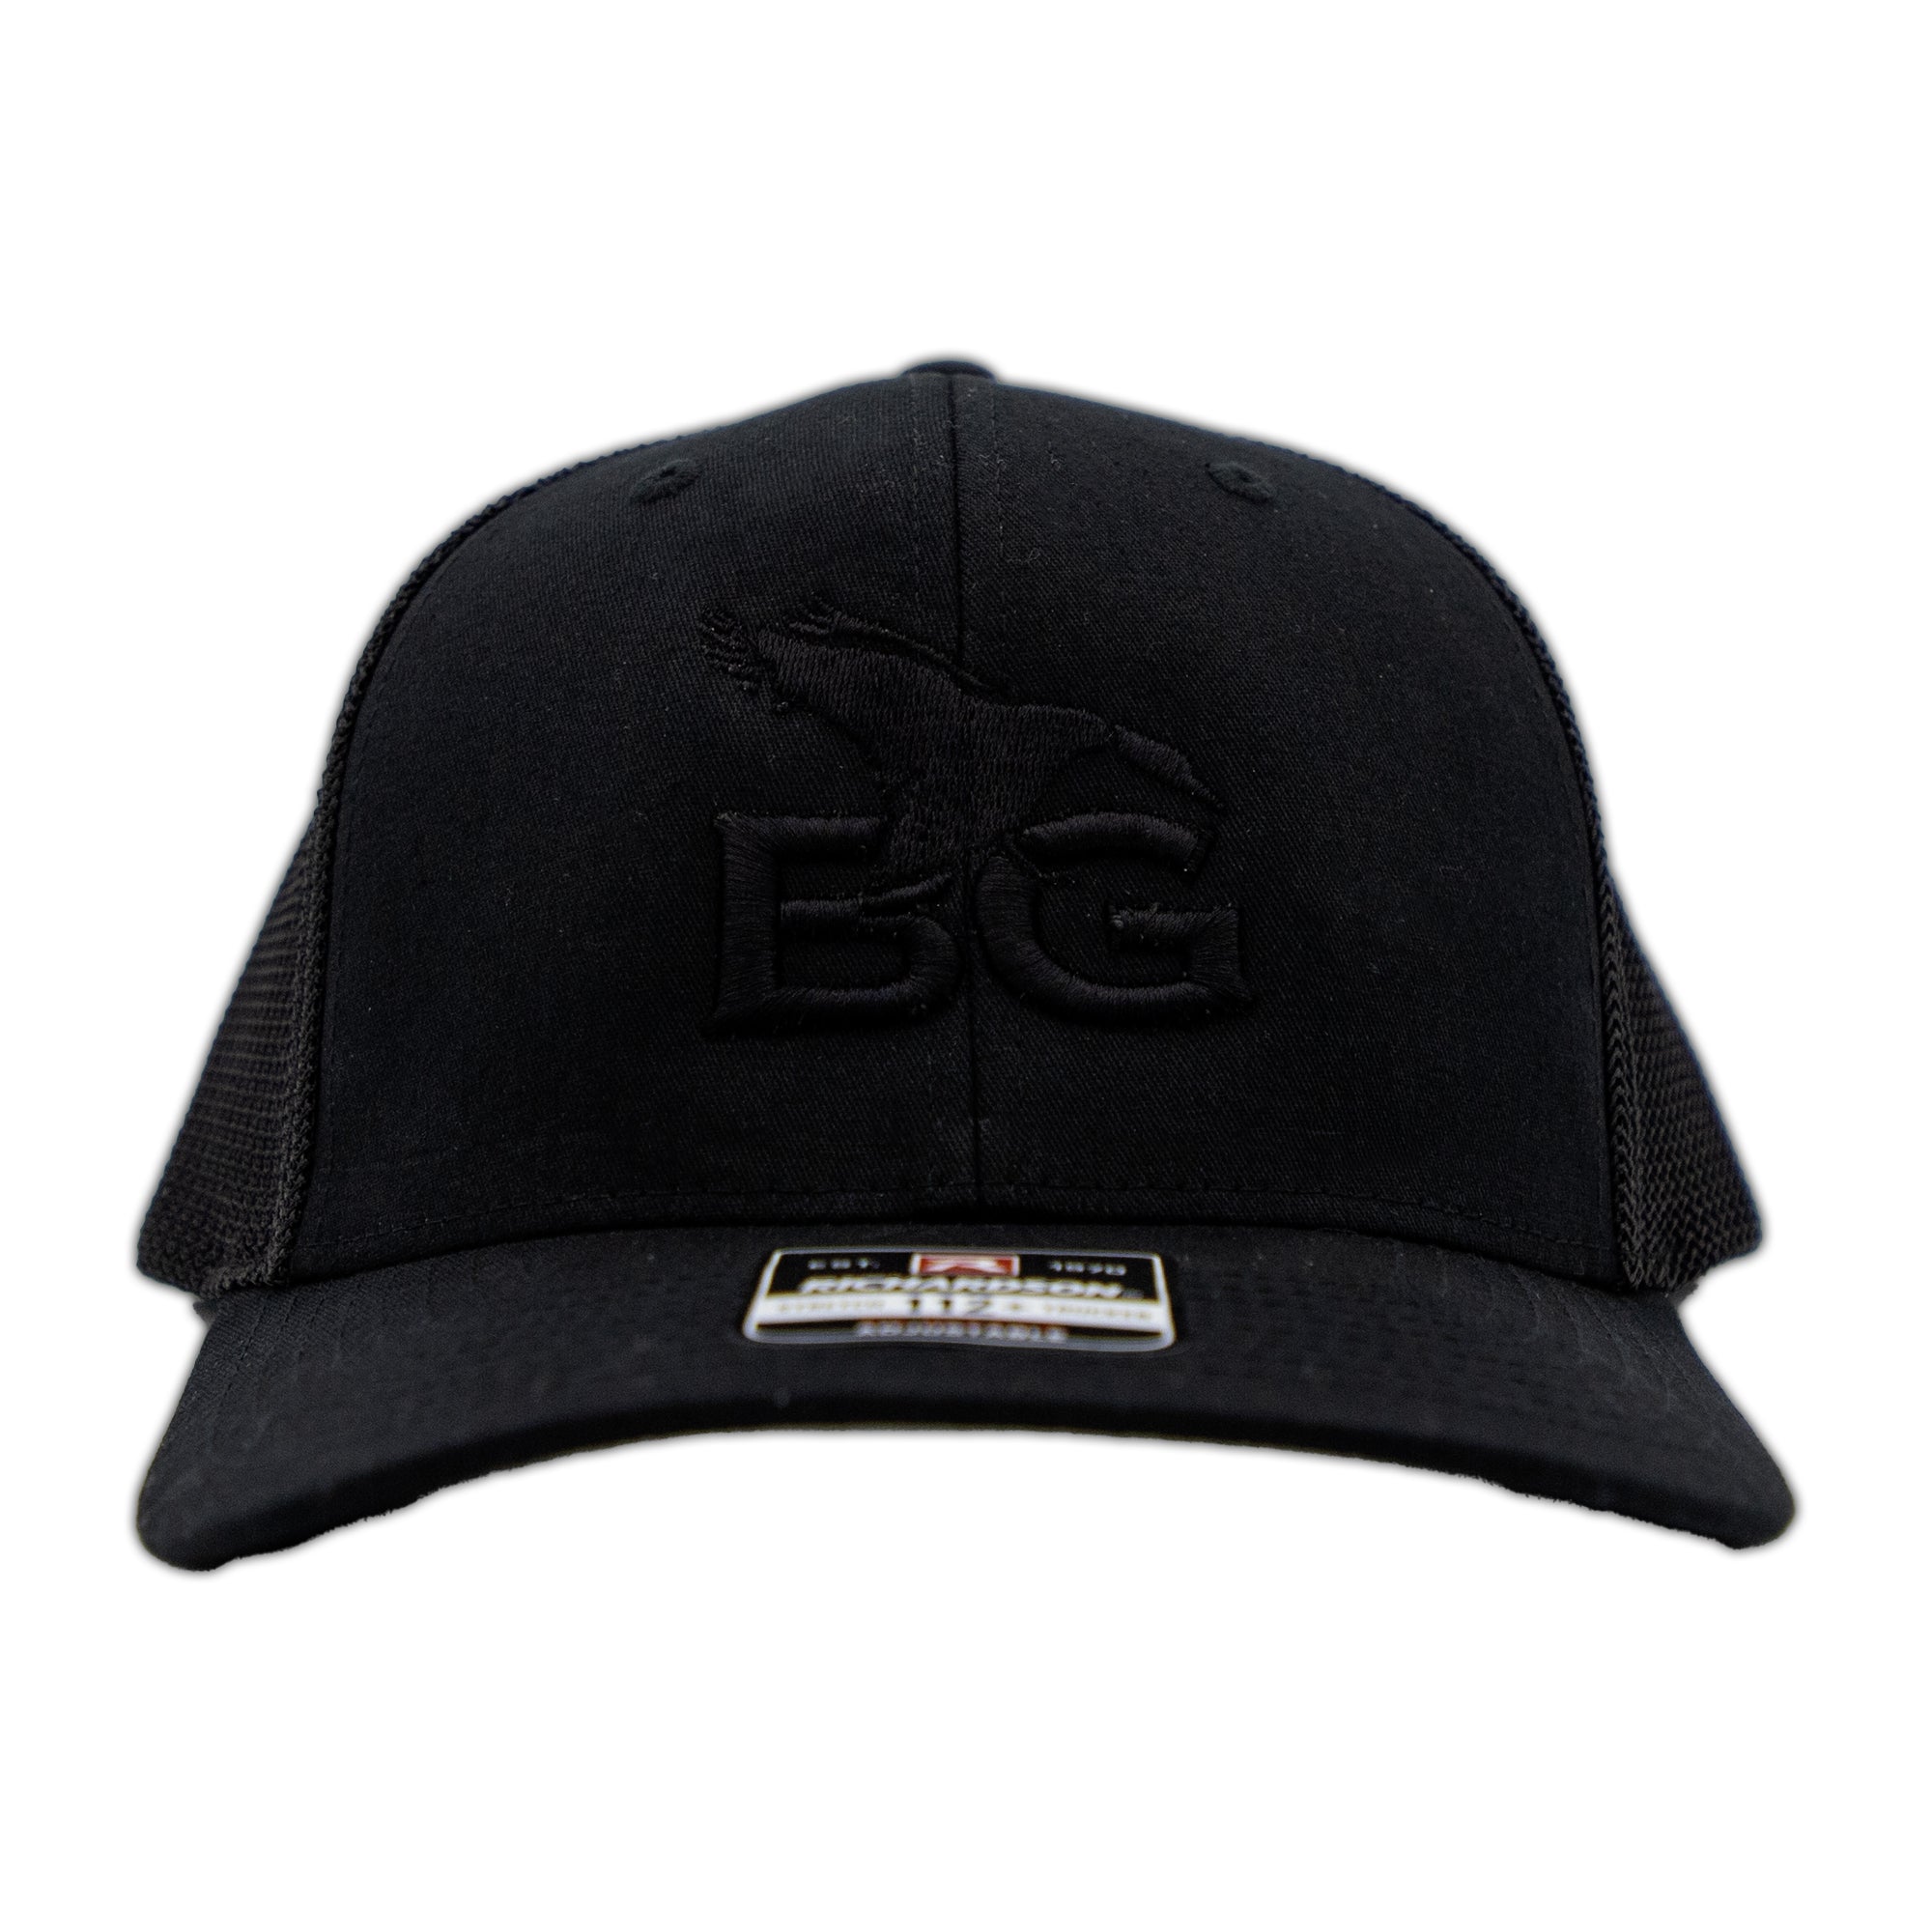 BGC Blackout Cap